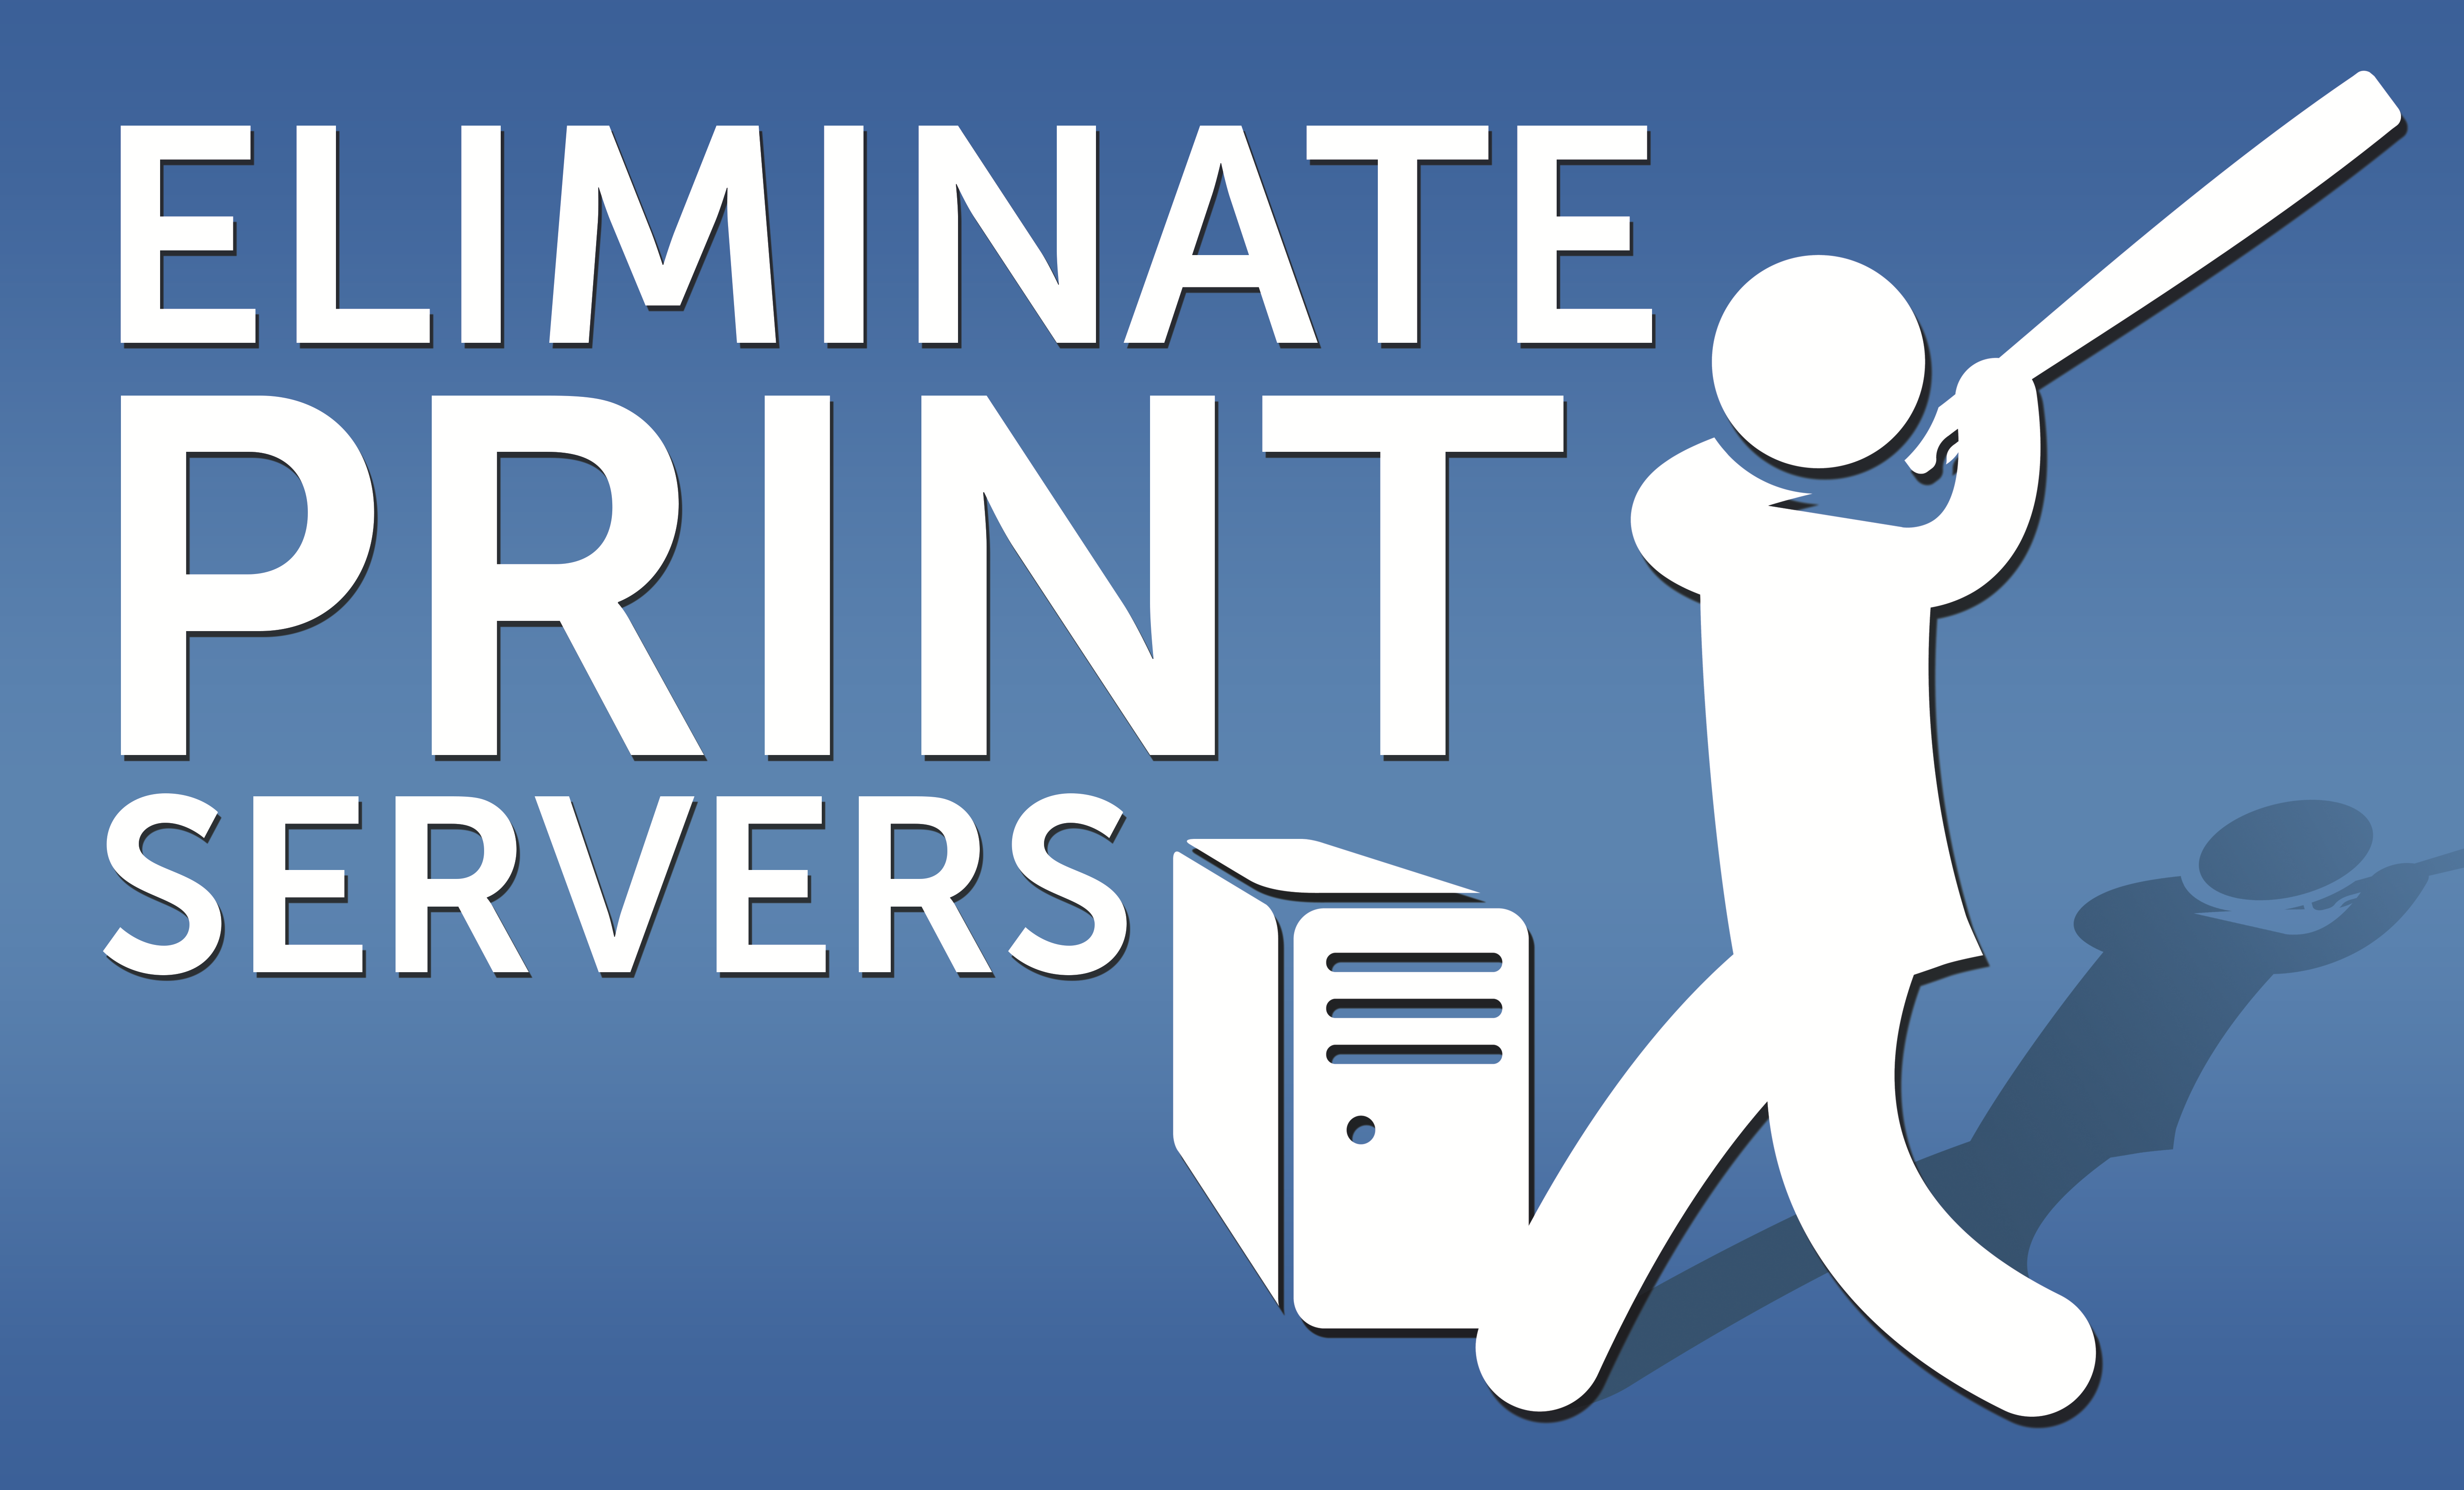 Eliminate PrinterServers